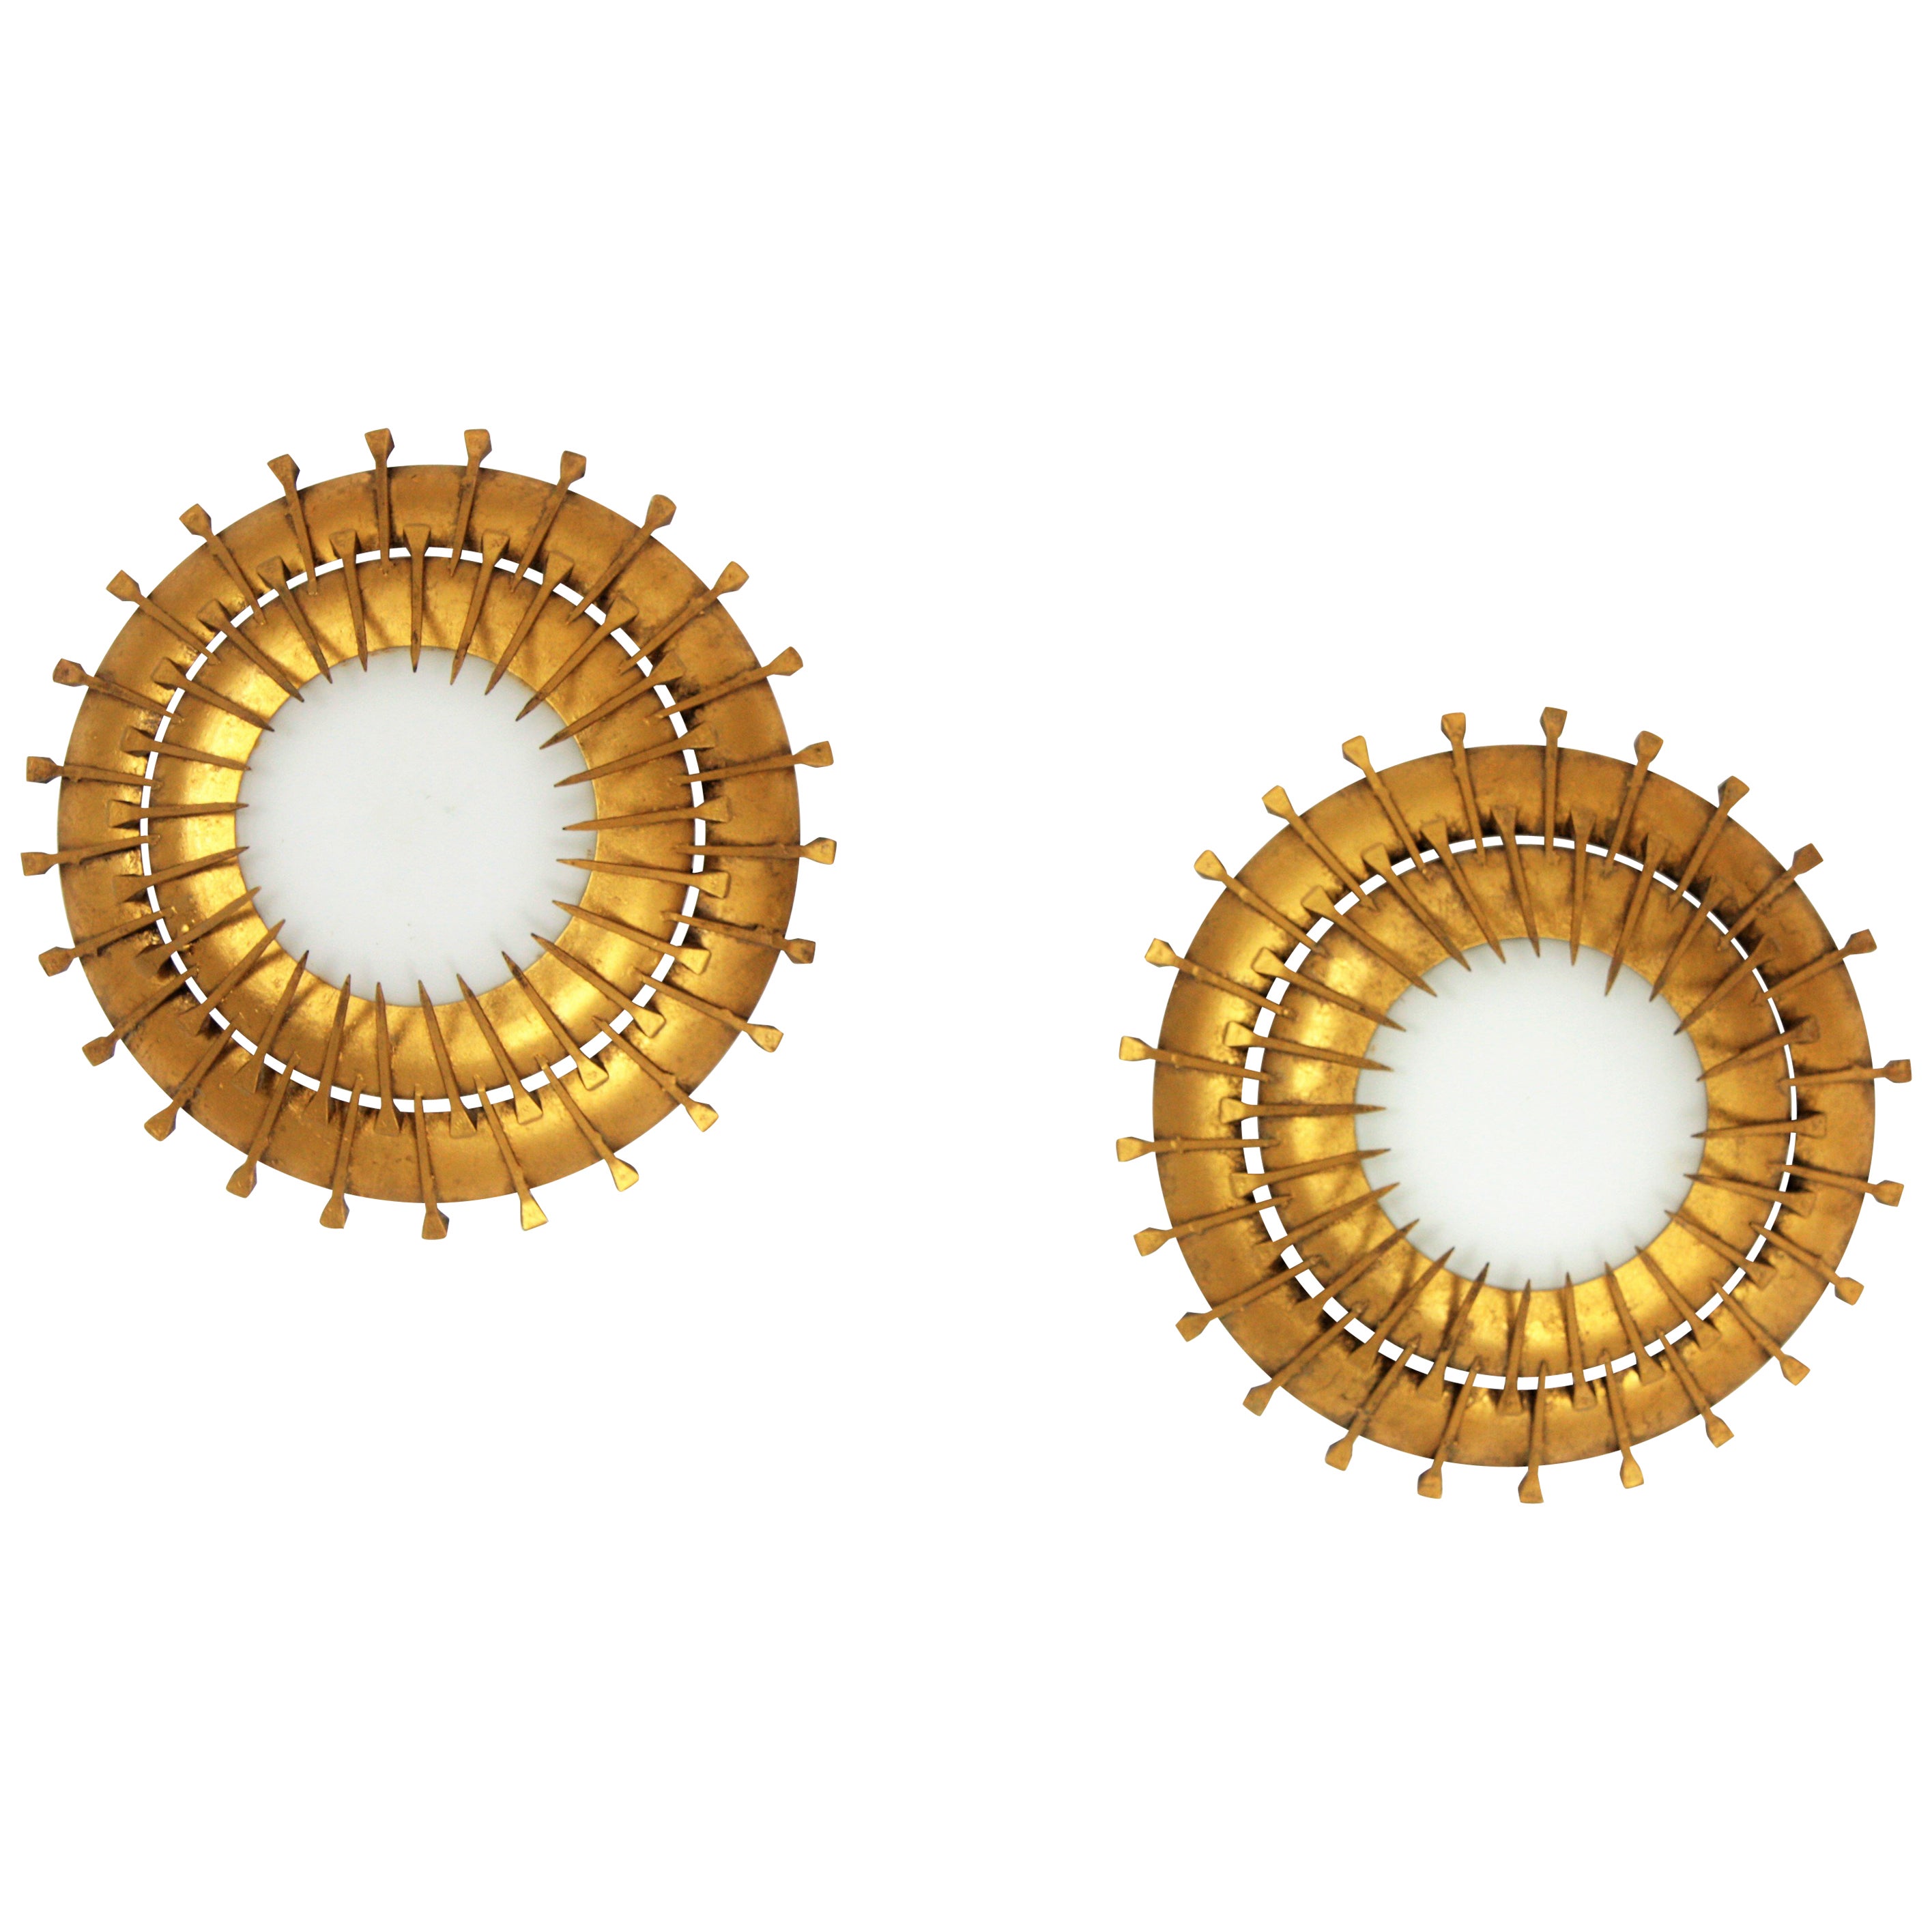 Luminarias francesas sunburst de los años 1940-1950, cristal de leche, hierro dorado
Hermosas piezas colocadas solas, pero también interesantes mezcladas con otras luminarias de esta forma para crear una constelación en el techo o una composición en